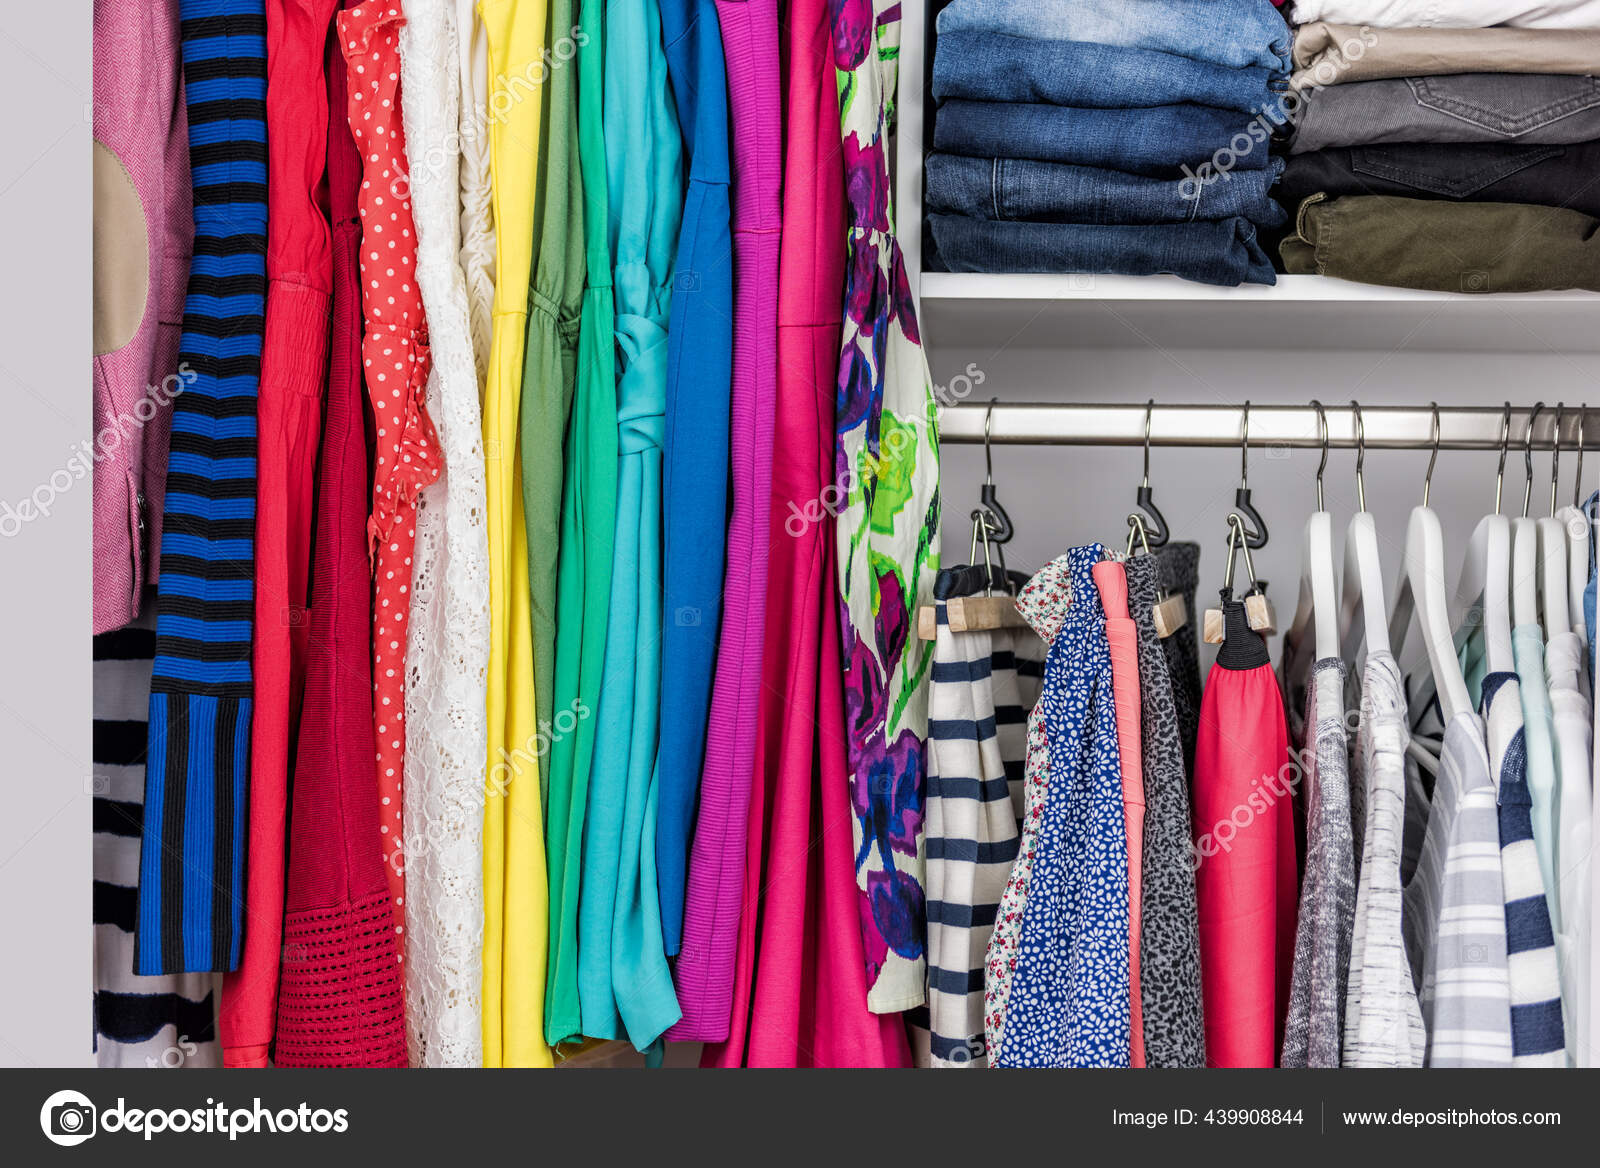 https://st2.depositphotos.com/2069237/43990/i/1600/depositphotos_439908844-stock-photo-organized-home-clothing-closet-or.jpg